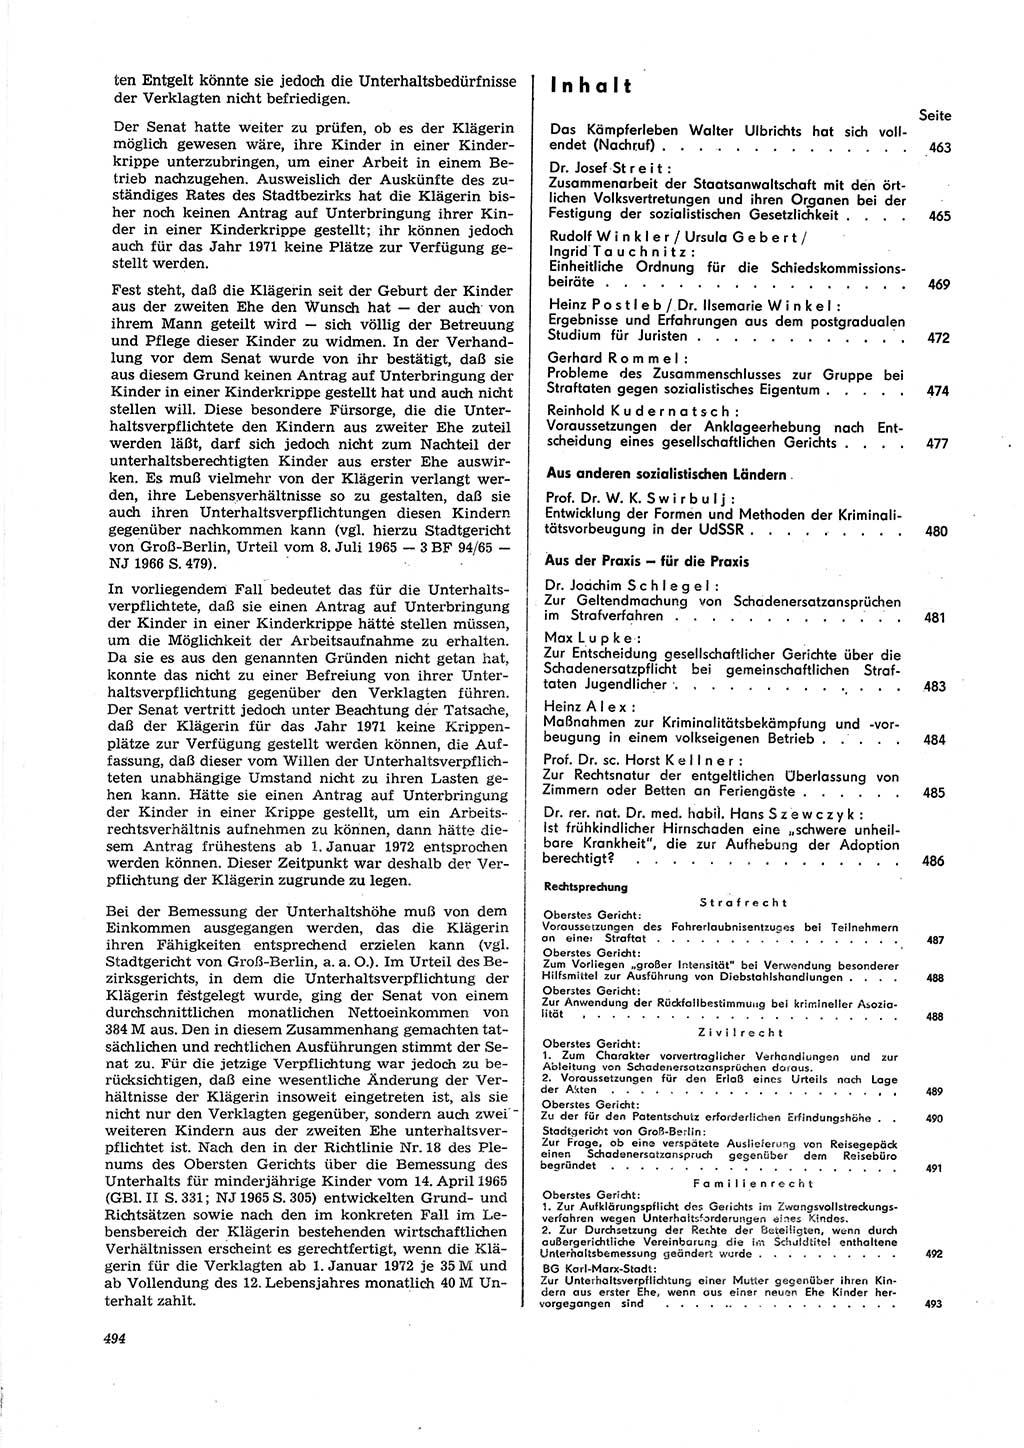 Neue Justiz (NJ), Zeitschrift für Recht und Rechtswissenschaft [Deutsche Demokratische Republik (DDR)], 27. Jahrgang 1973, Seite 494 (NJ DDR 1973, S. 494)